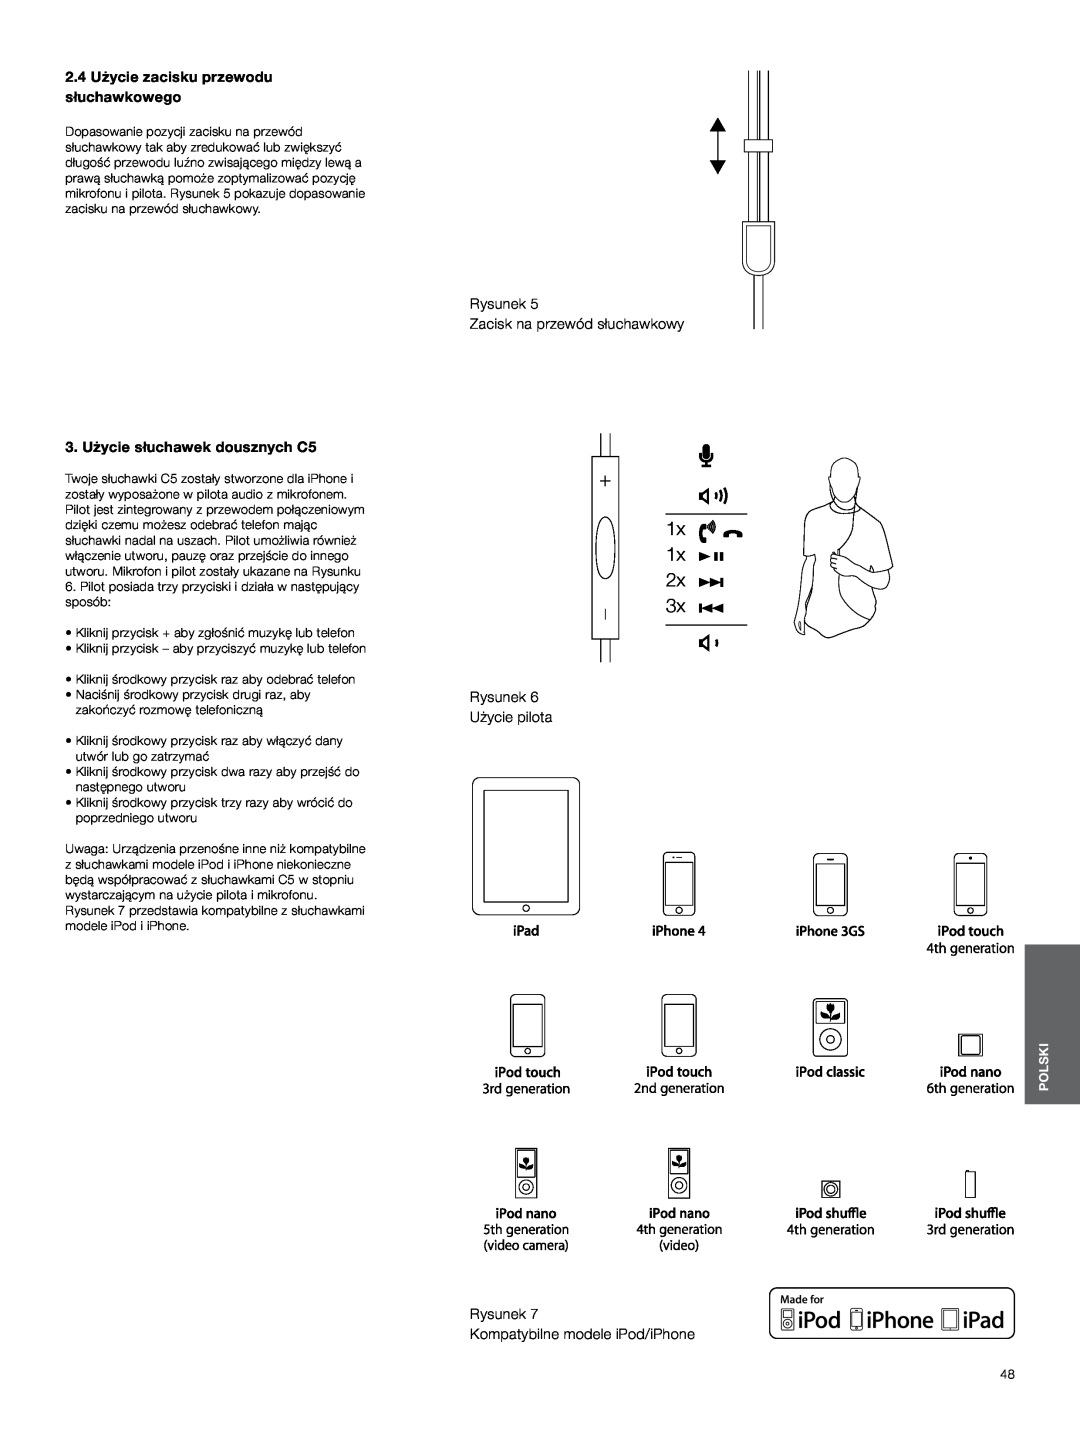 Bowers & Wilkins C5 manual 1x 1x, 2.4Użycie zacisku przewodu słuchawkowego, Rysunek Zacisk na przewód słuchawkowy, Polski 